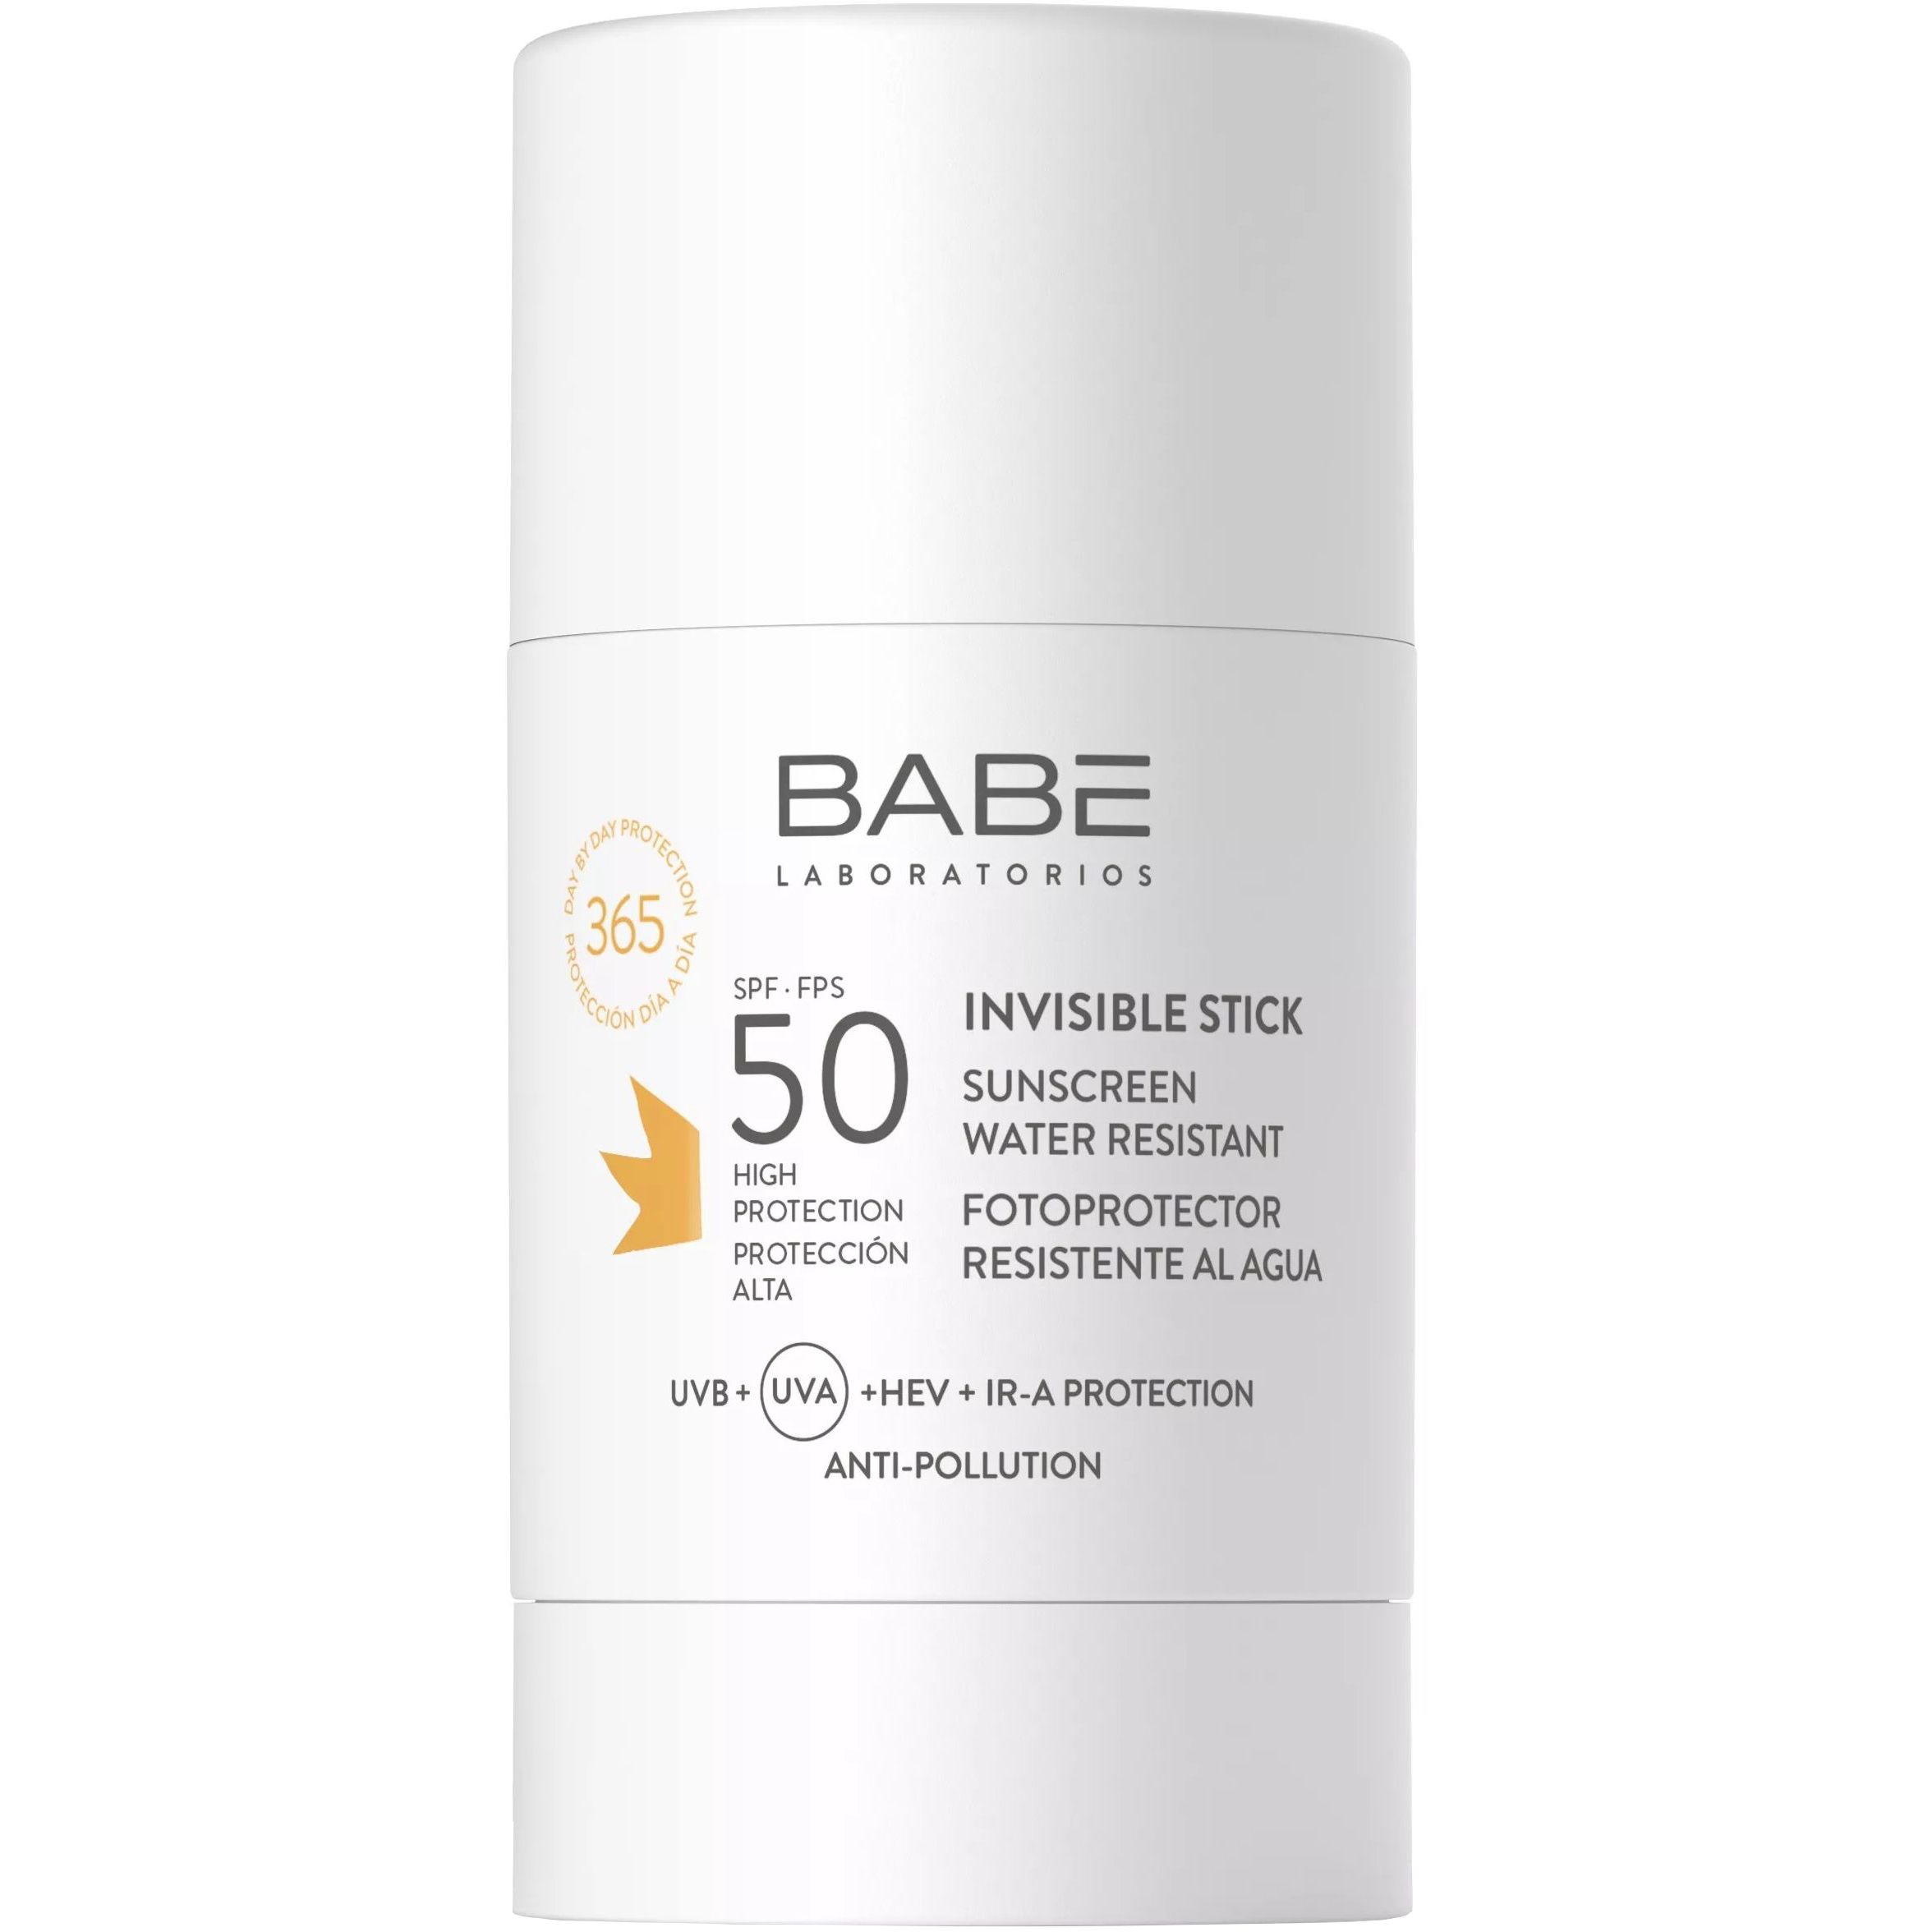 Сонцезахисний невидимий прозорий стік Babe Laboratorios Sun Protection SPF 50 для обличчя і тіла 50 мл - фото 1